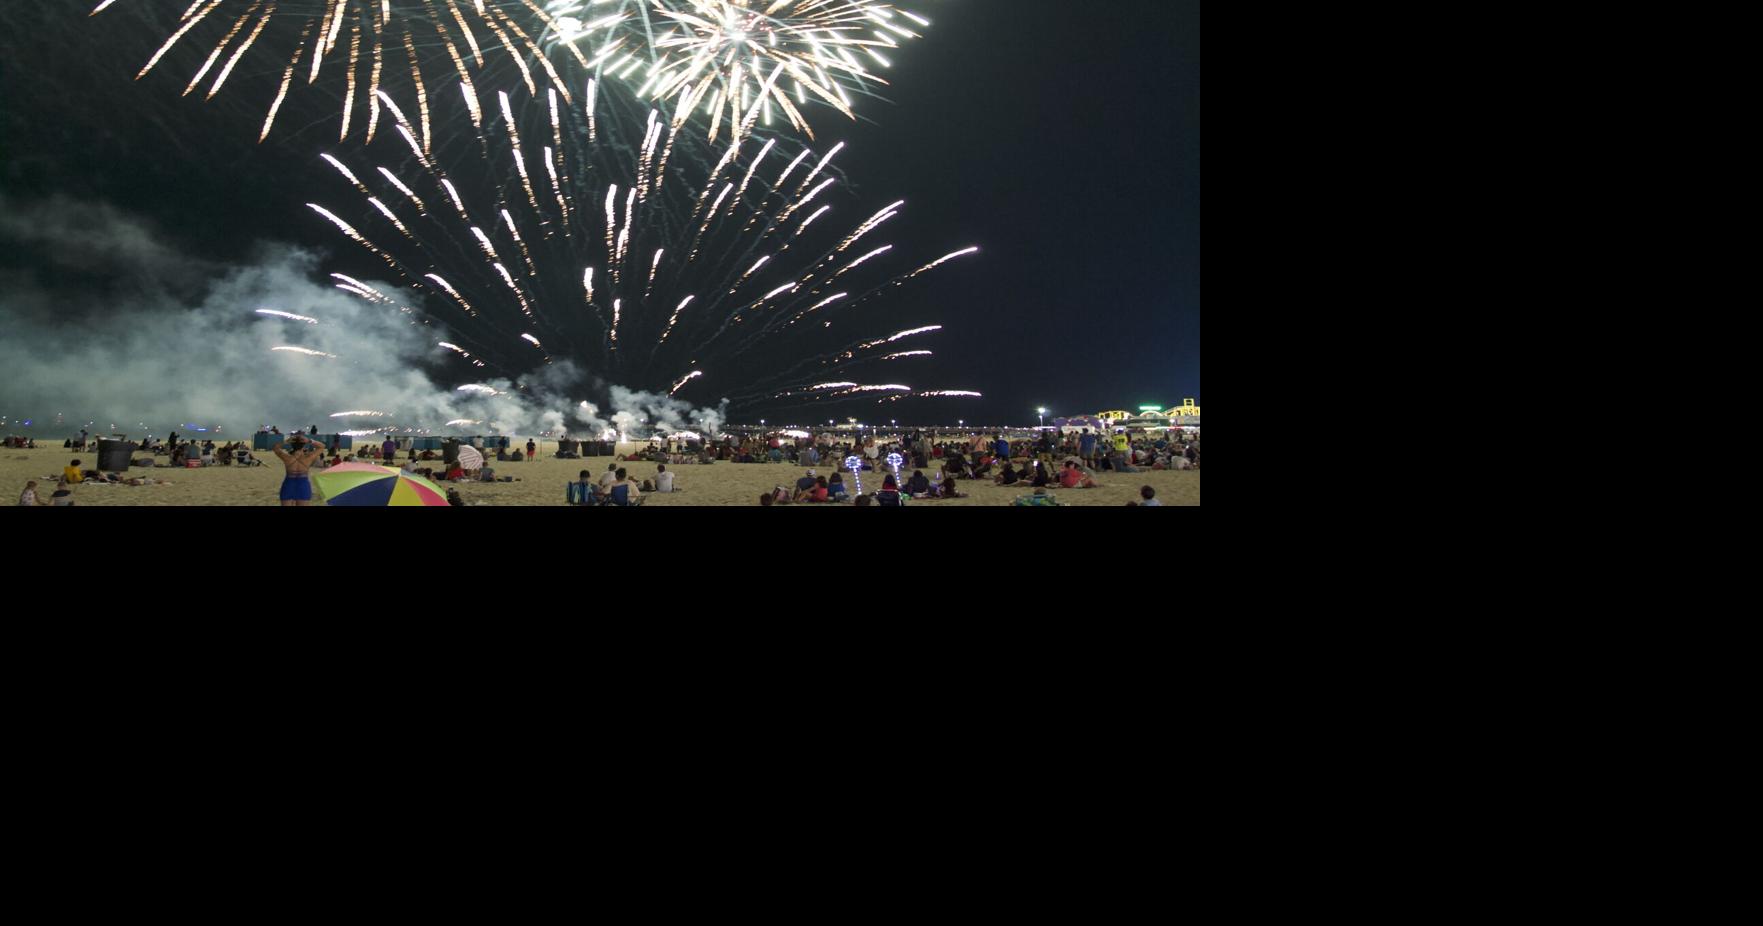 July 4 fireworks return to Caroline Street and Northside Park in Ocean